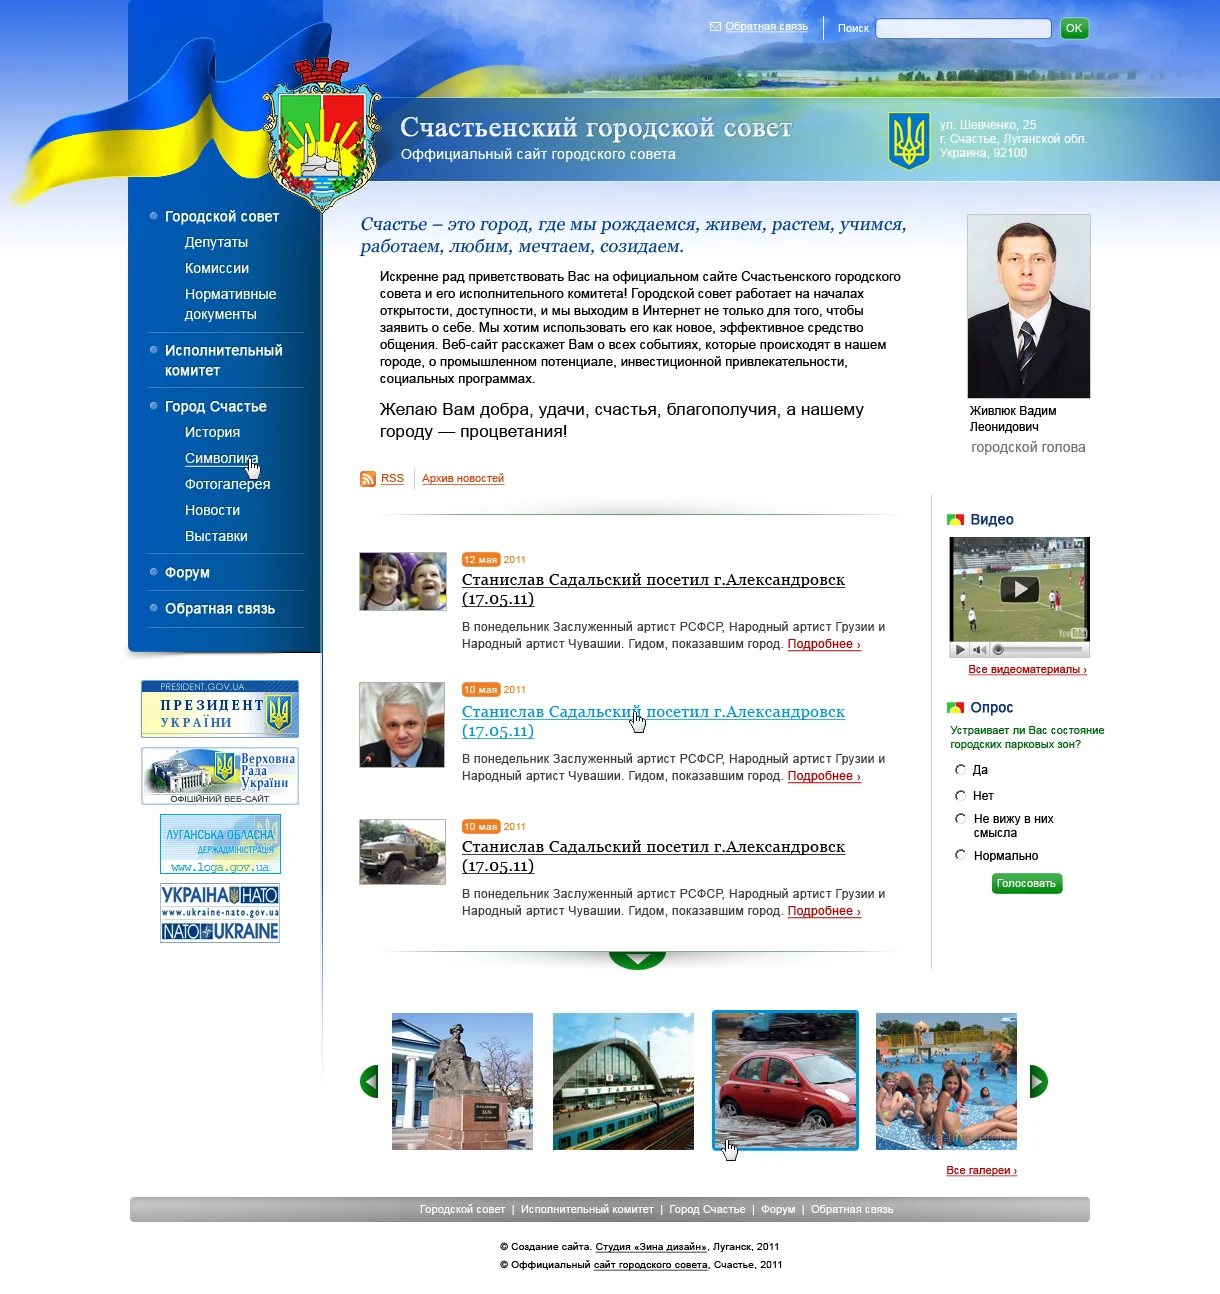 Створення сайту Щасливської міської ради - Головна сторінка